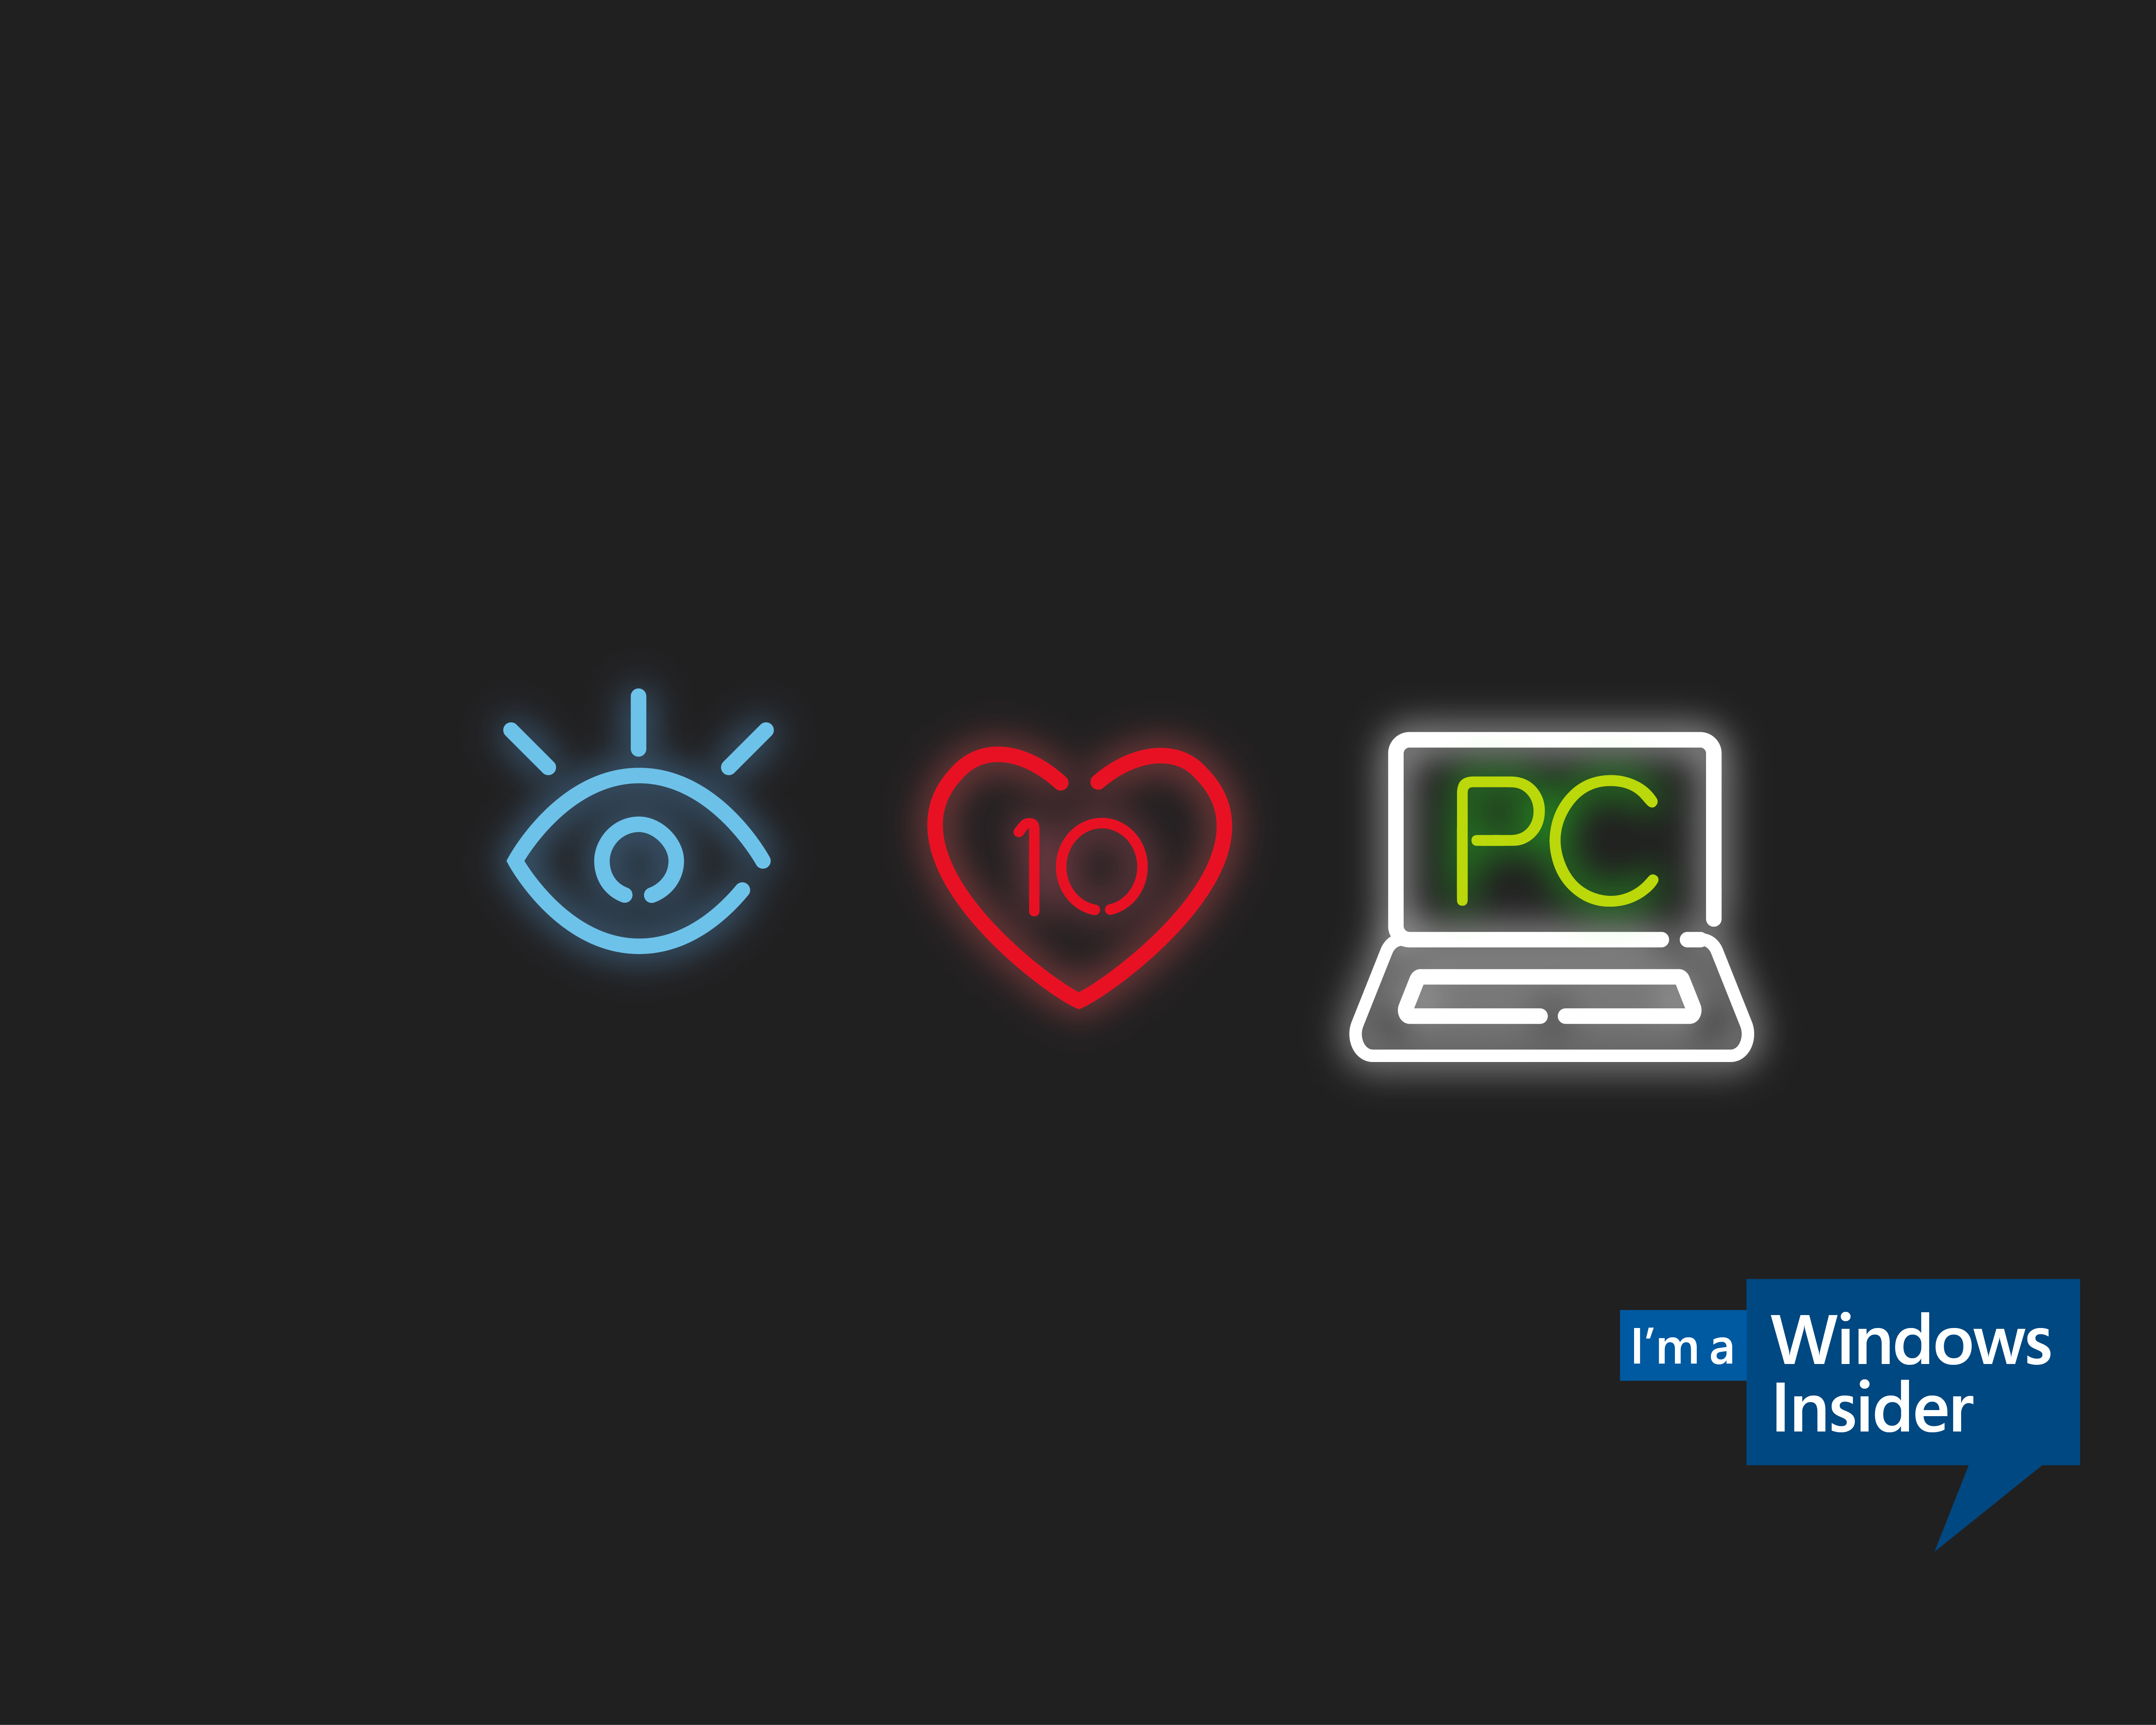 微软发布windows insider官方主题壁纸